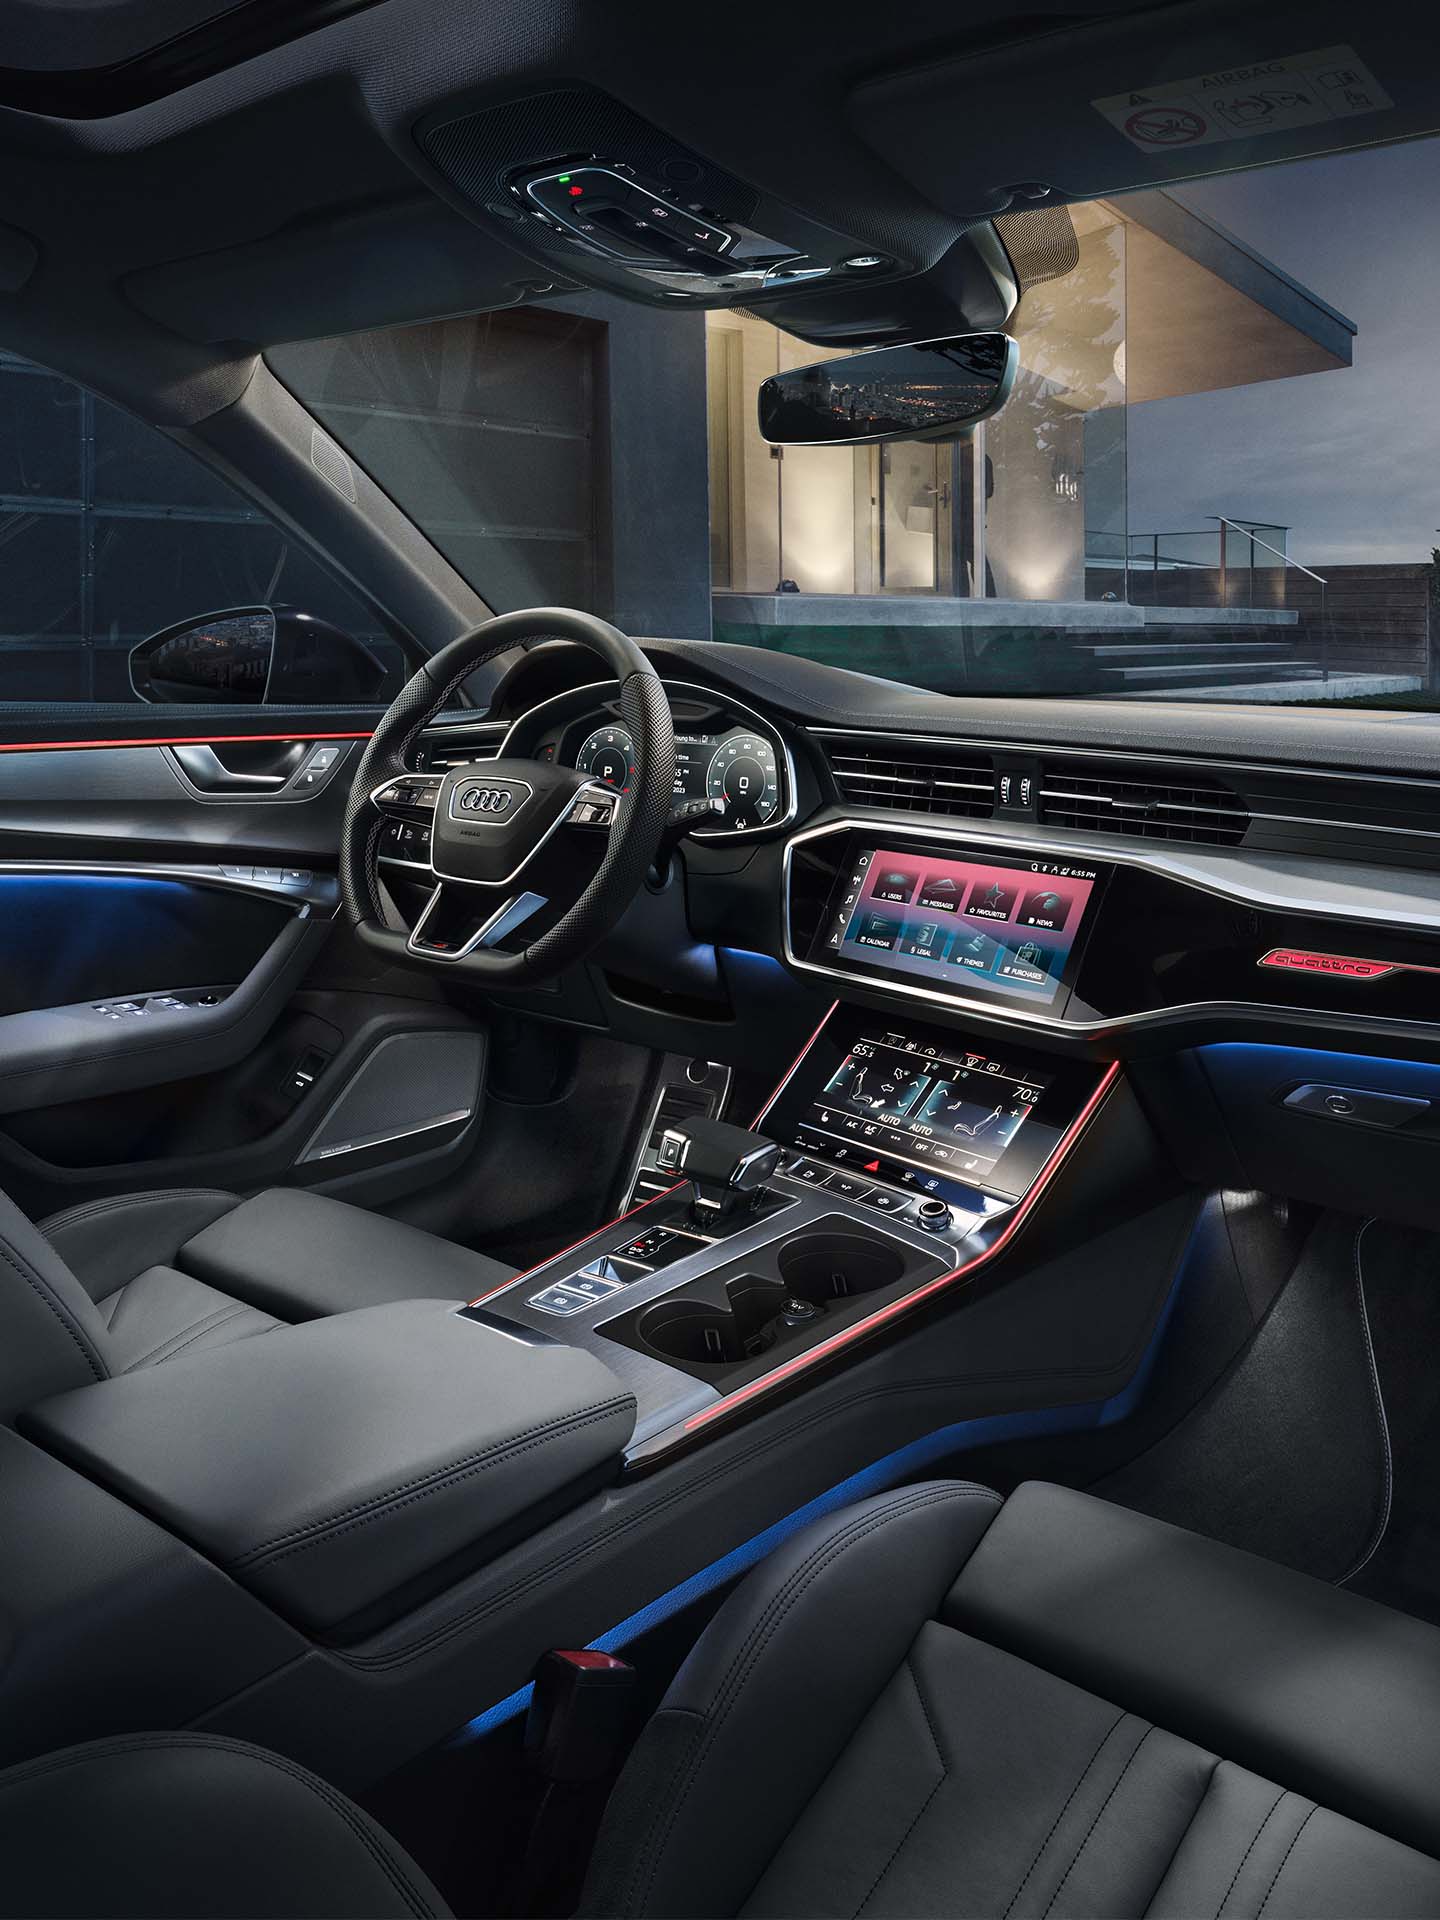 Temalar kokpit görünümünde Audi'yi aydınlatıyor